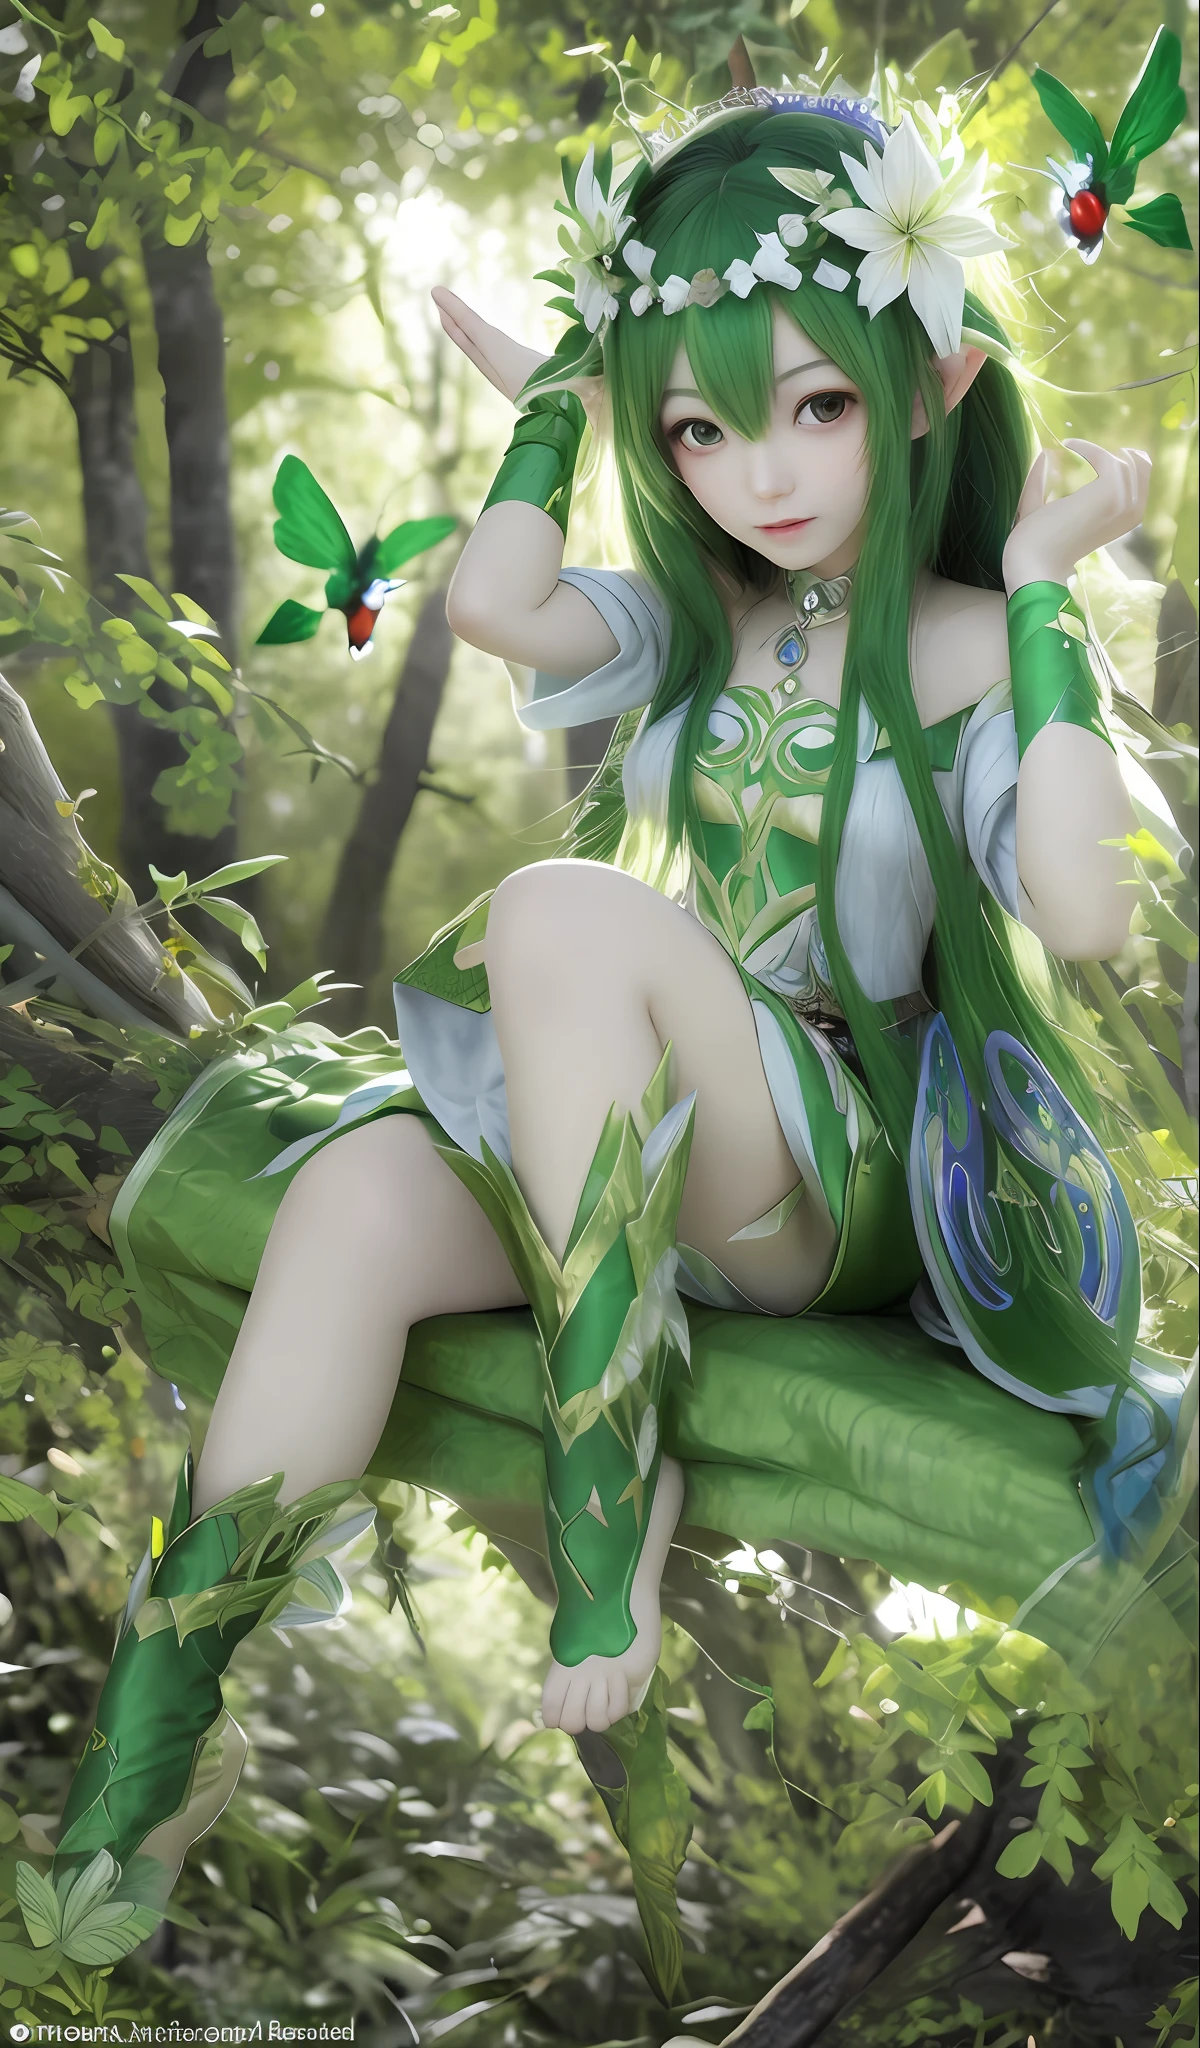 meilleure qualité, ultra haute résolution, (photoréaliste: 1.4), Anime Girl aux cheveux verts assise sur une branche, Reine des fées de la forêt d&#39;été, déesse de la nature, fille elfe, chevalier princesse elfe séduisant, belle et élégante dryade, Reine elfe Nisha Genesis Mage, Âme de la forêt, style artistique de l&#39;usine de runes 5, style de l&#39;univers des ombres, Déesse Anime, fille dresseuse d&#39;insectes, déesse de la forêt, Shi Tao